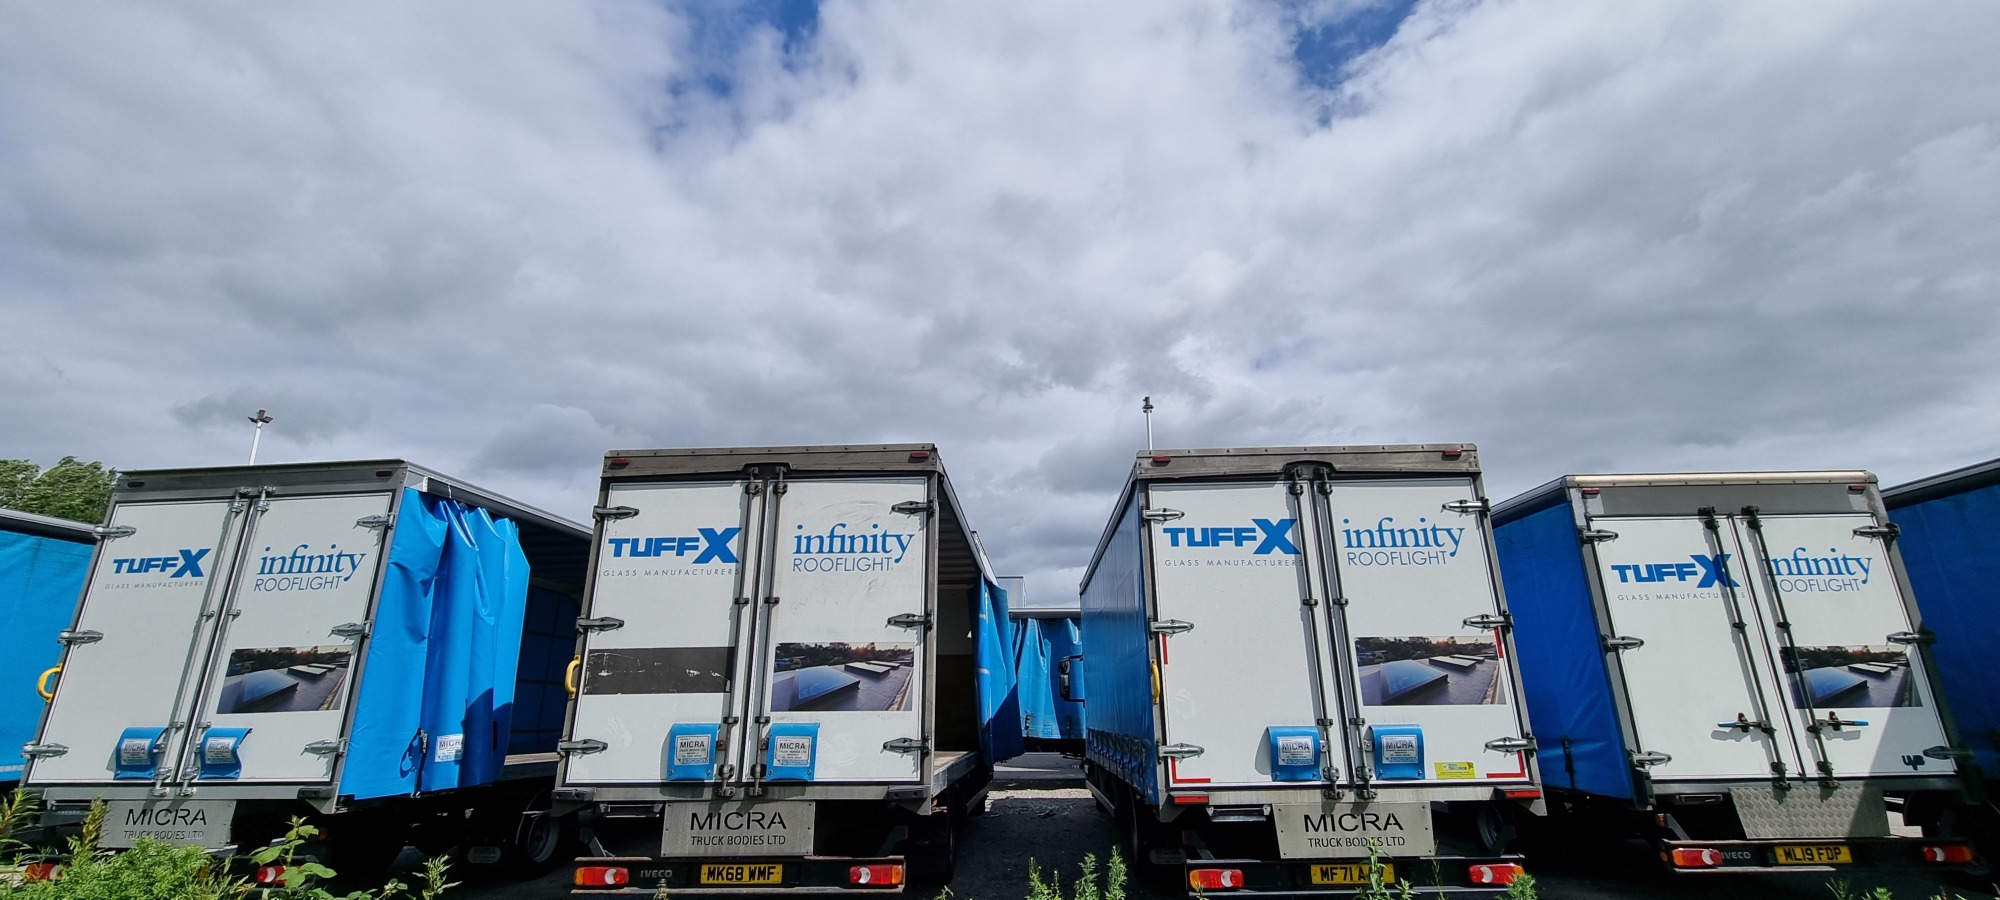 TuffX trucks